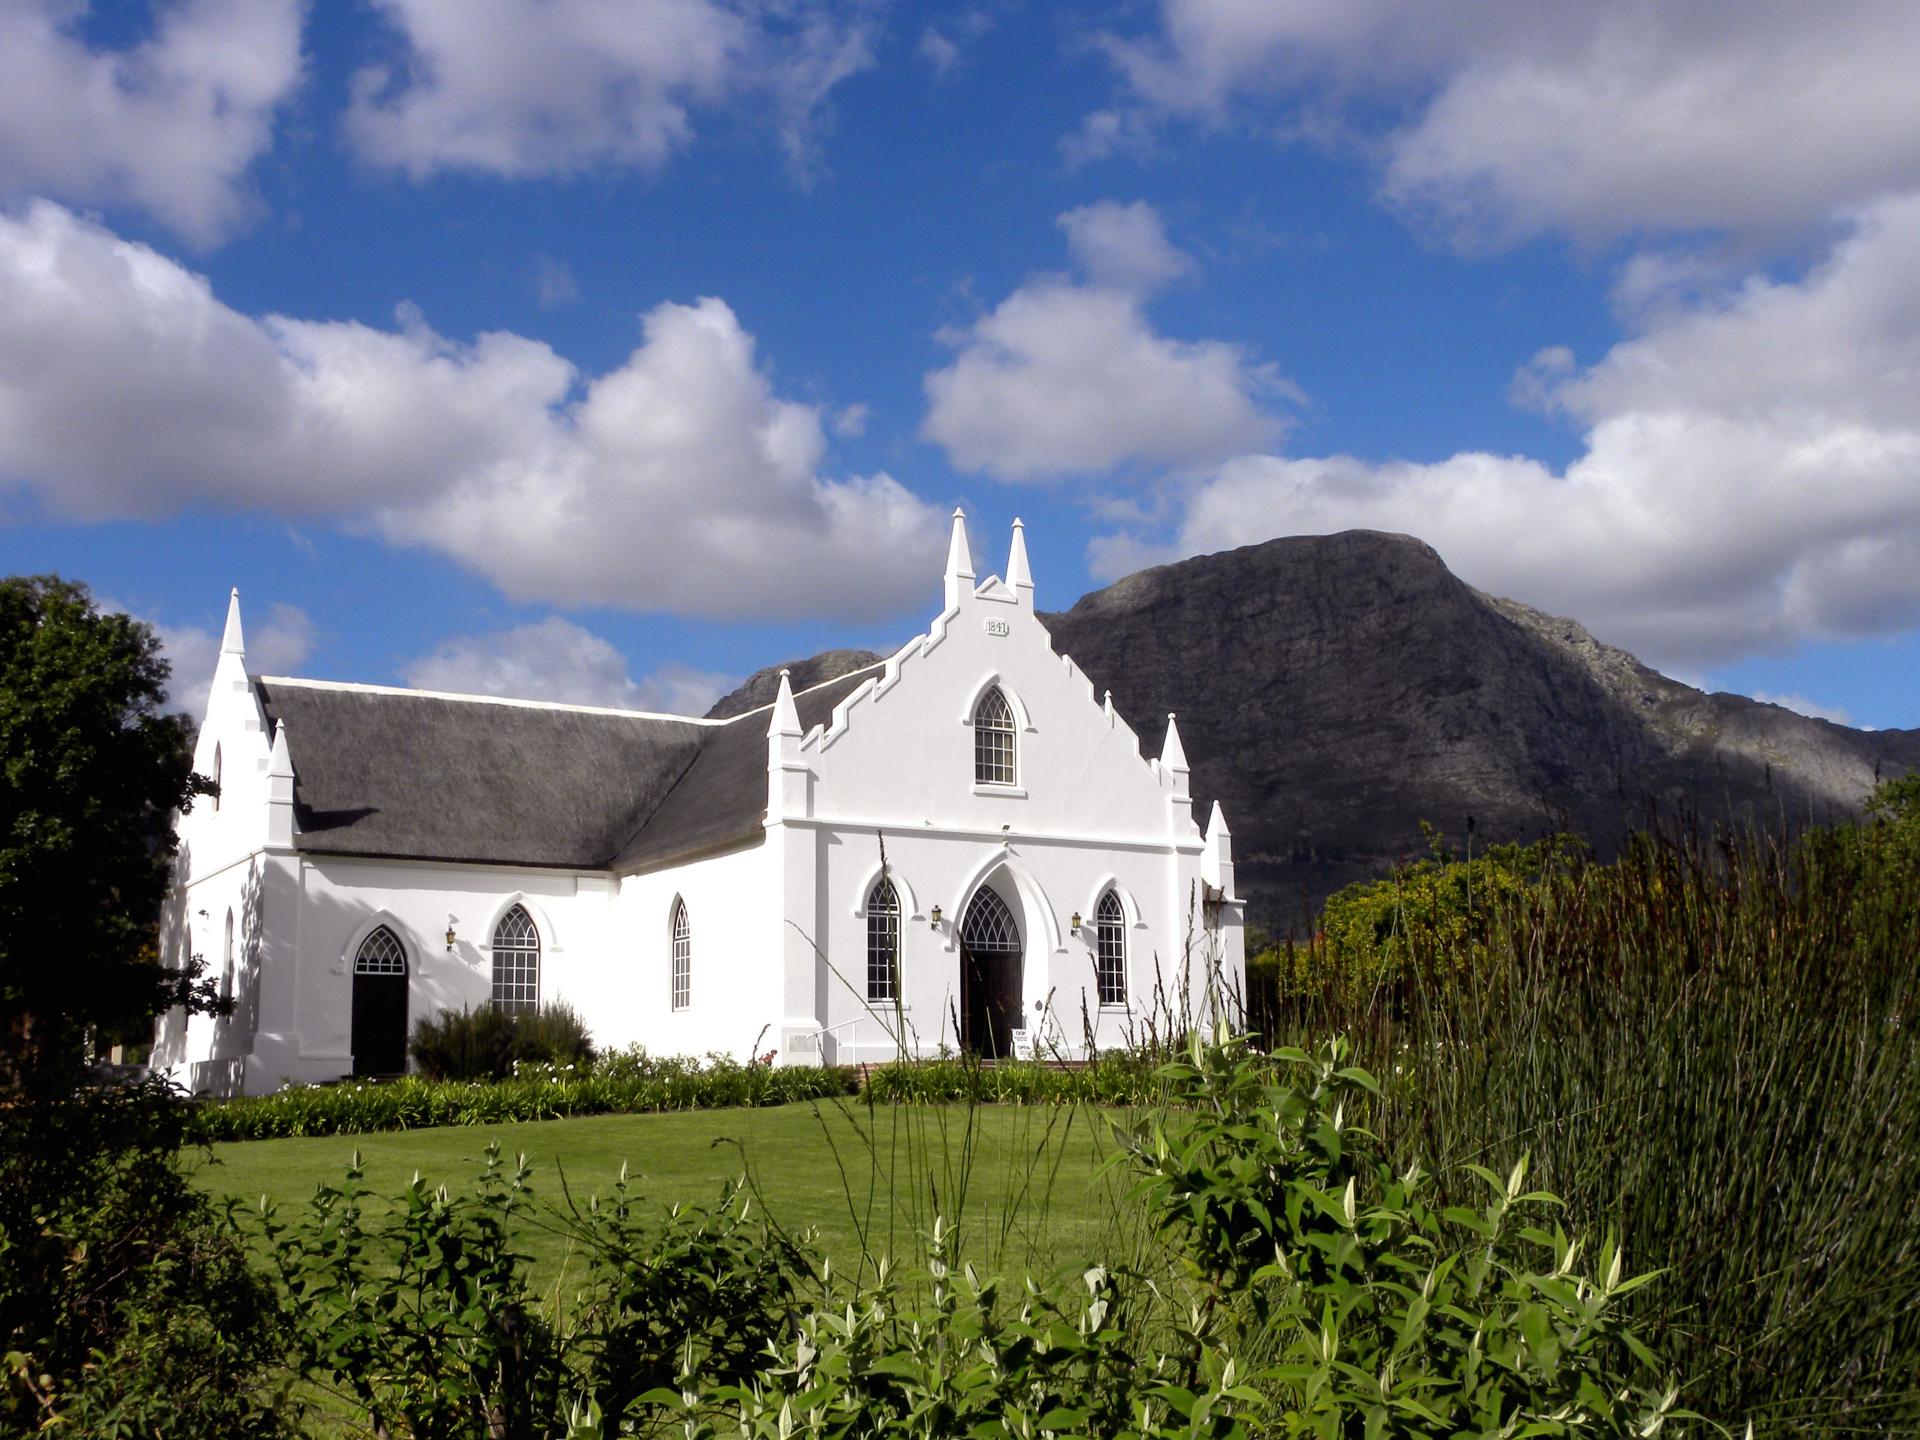 Stellenbosch Church